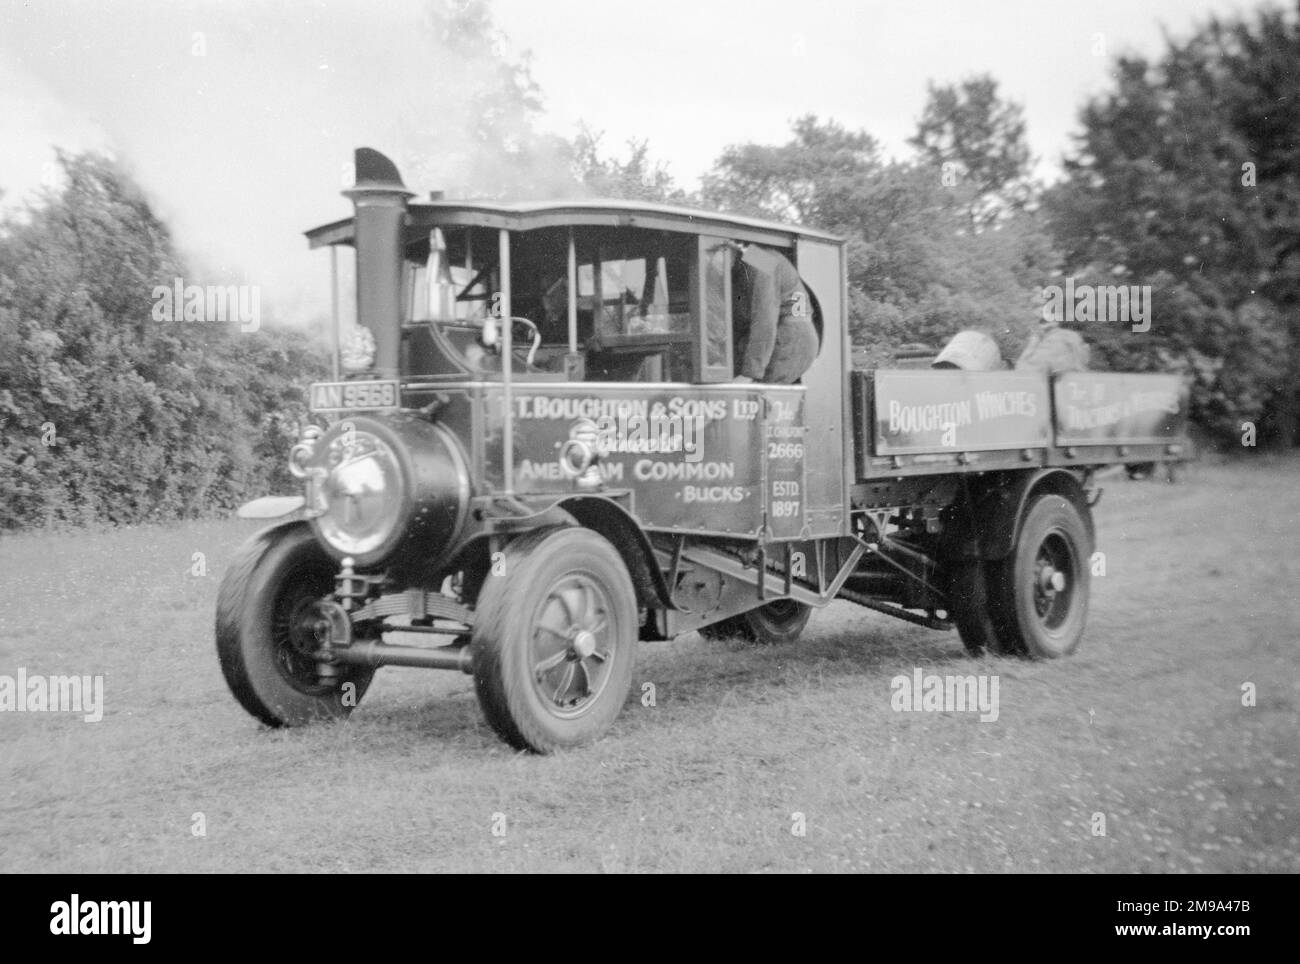 FODEN Steam Wagon AN9568 London Pride (msn 13138), 1928 gebaut, auf einer Walford Cross Auktion 1959. (FODEN Trucks war ein britisches Lkw- und Busunternehmen, das 1856 in Elworth bei Sandbach seinen Ursprung hatte.) Stockfoto